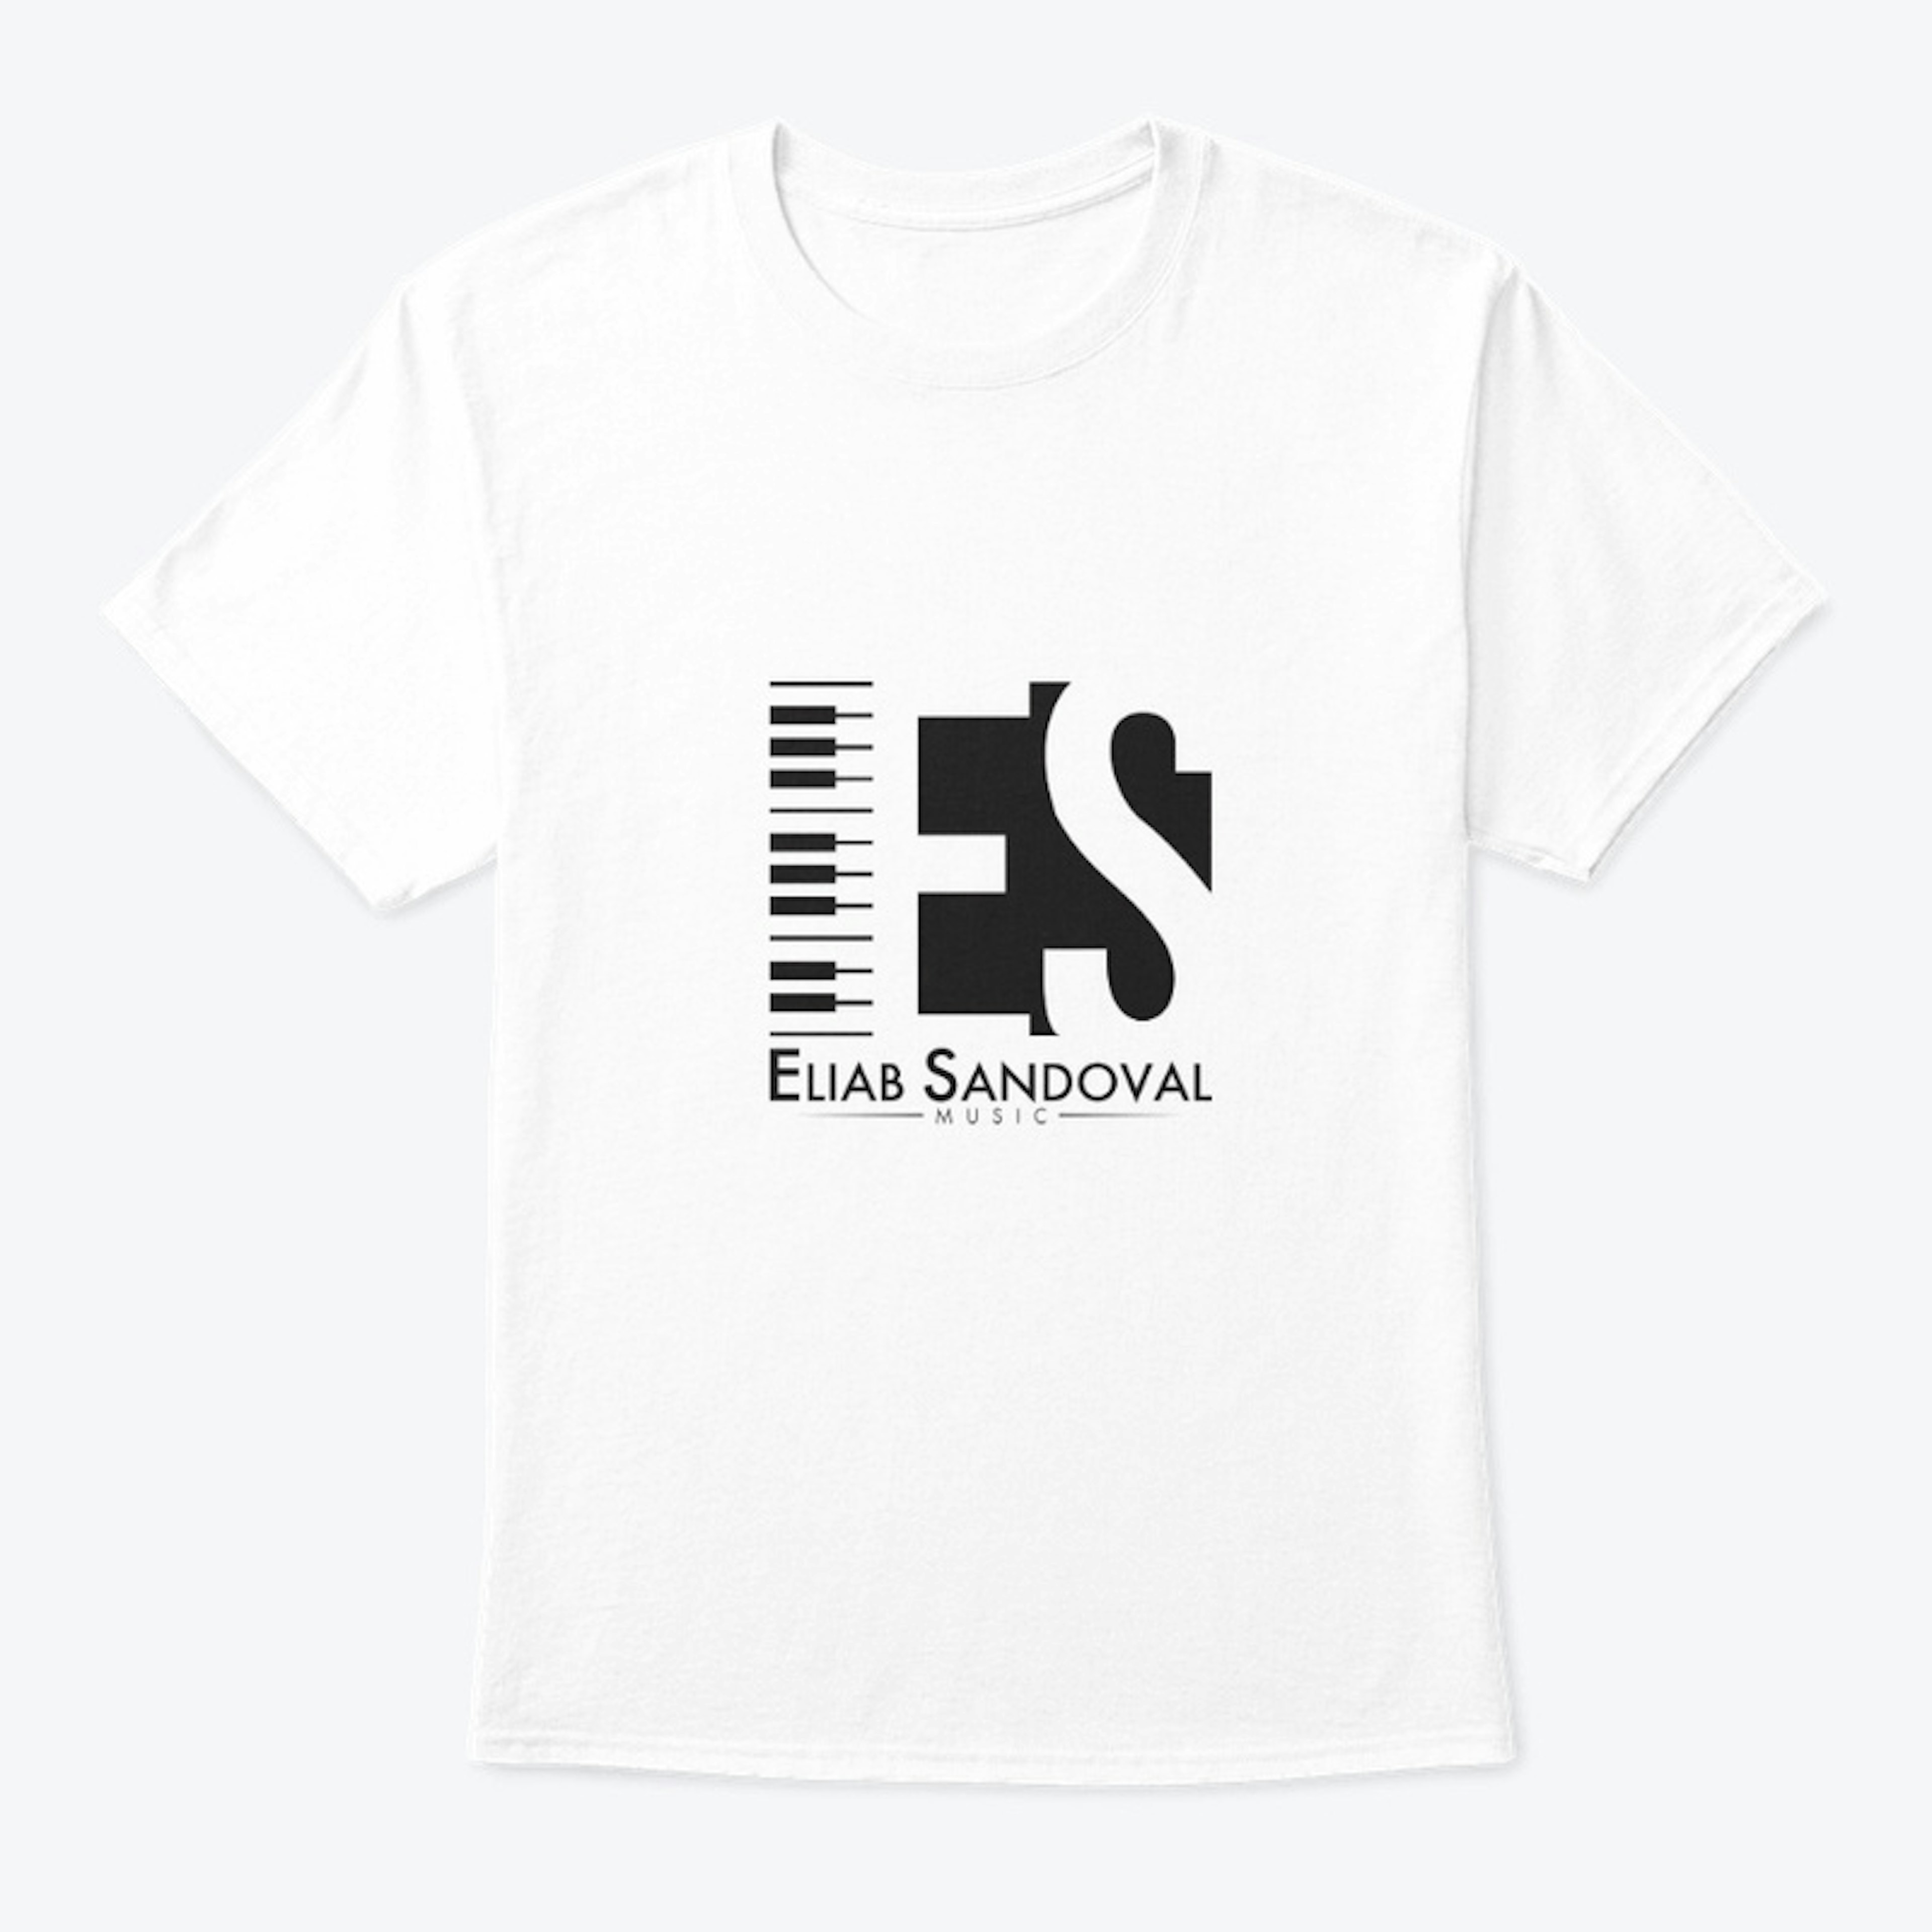 Eliab Sandoval Music T-Shirt